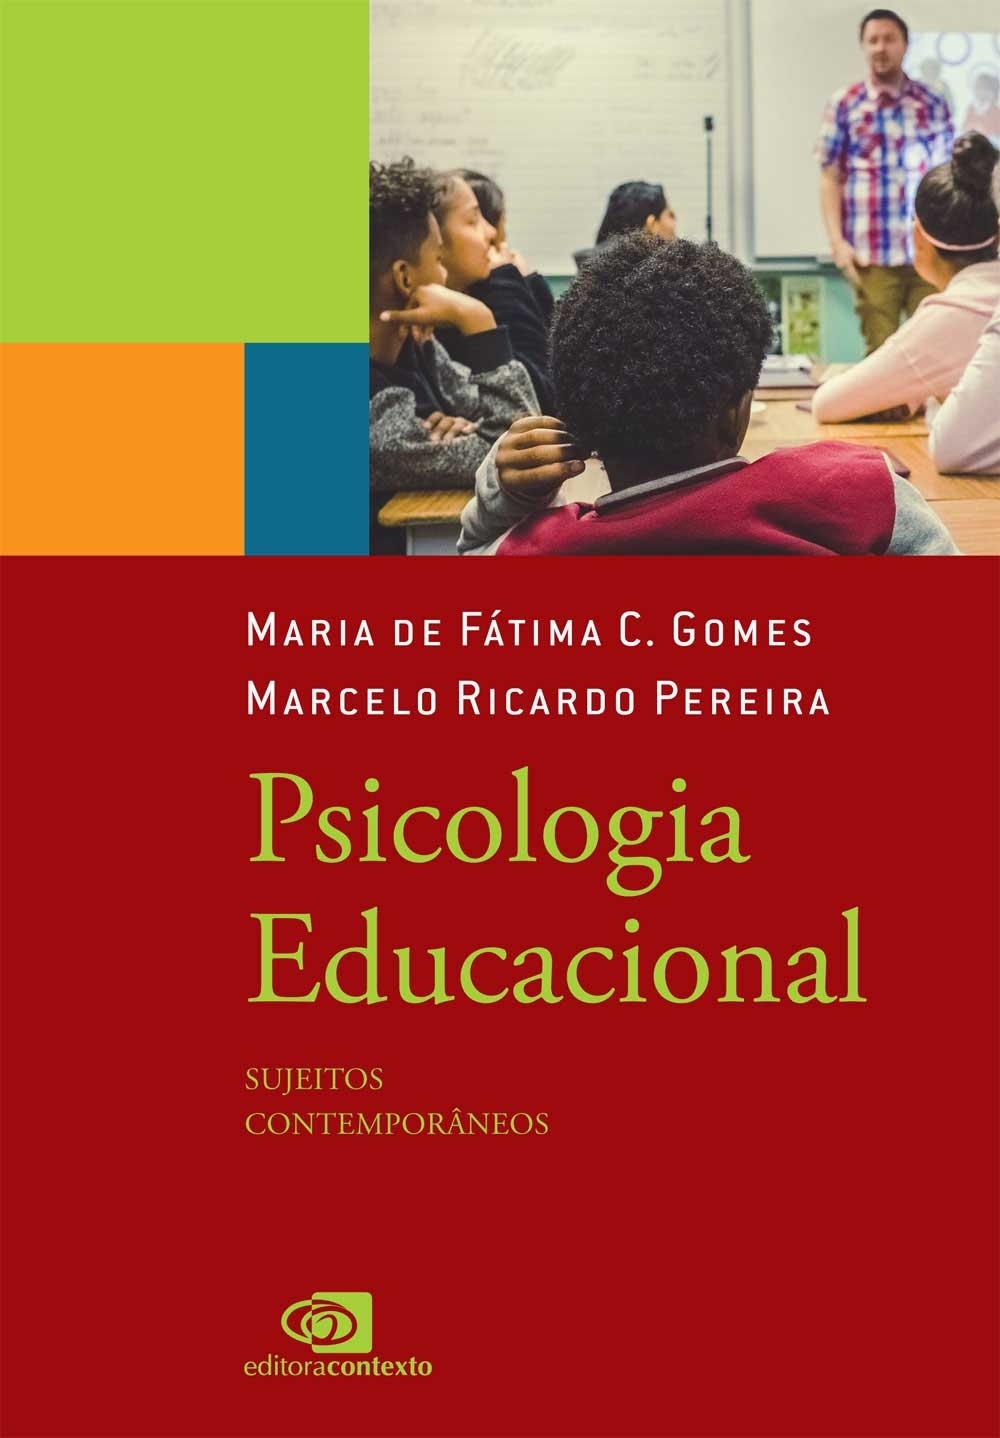 Psicologia educacional: sujeitos contemporâneos